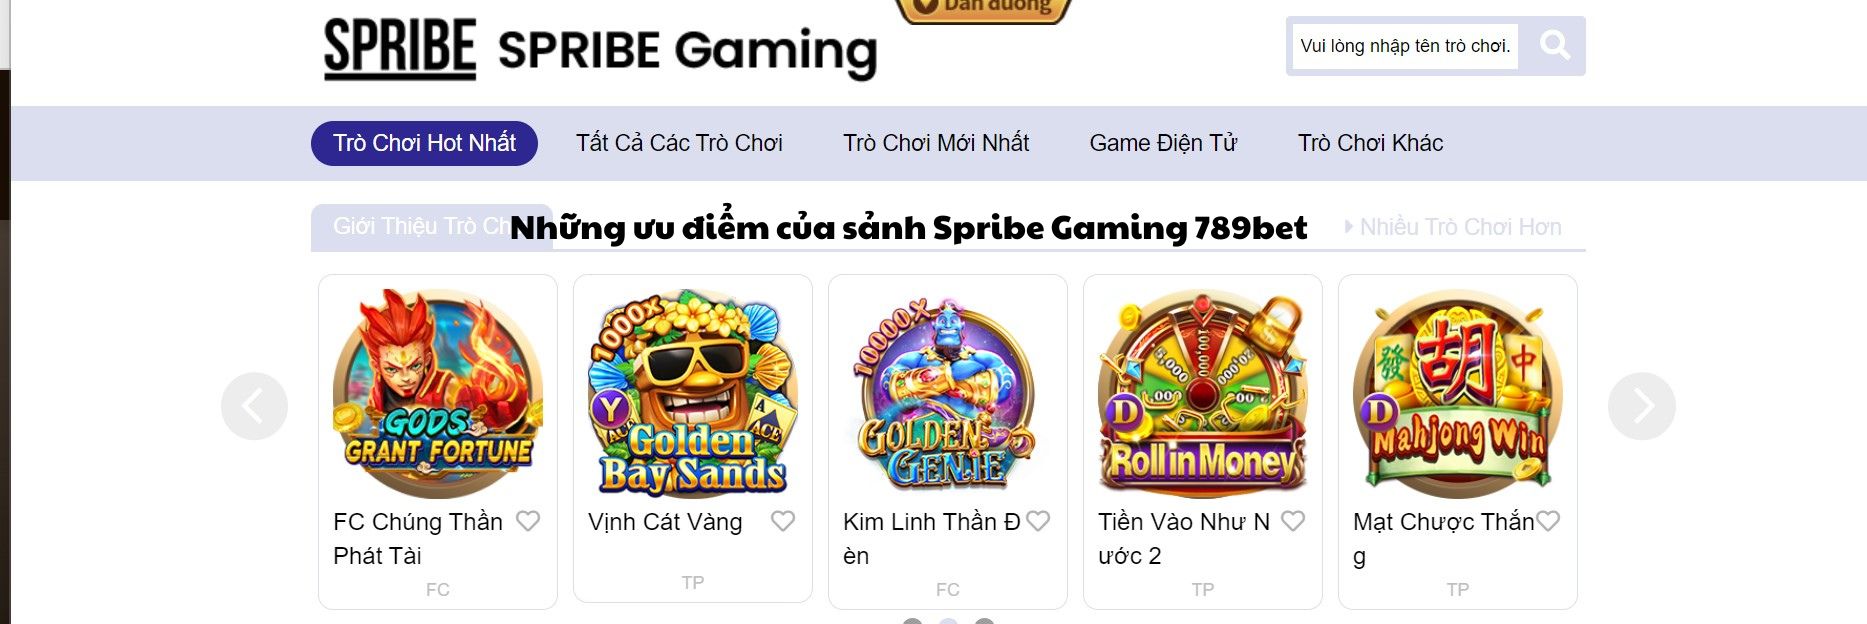 Những ưu điểm của sảnh Spribe Gaming 789bet